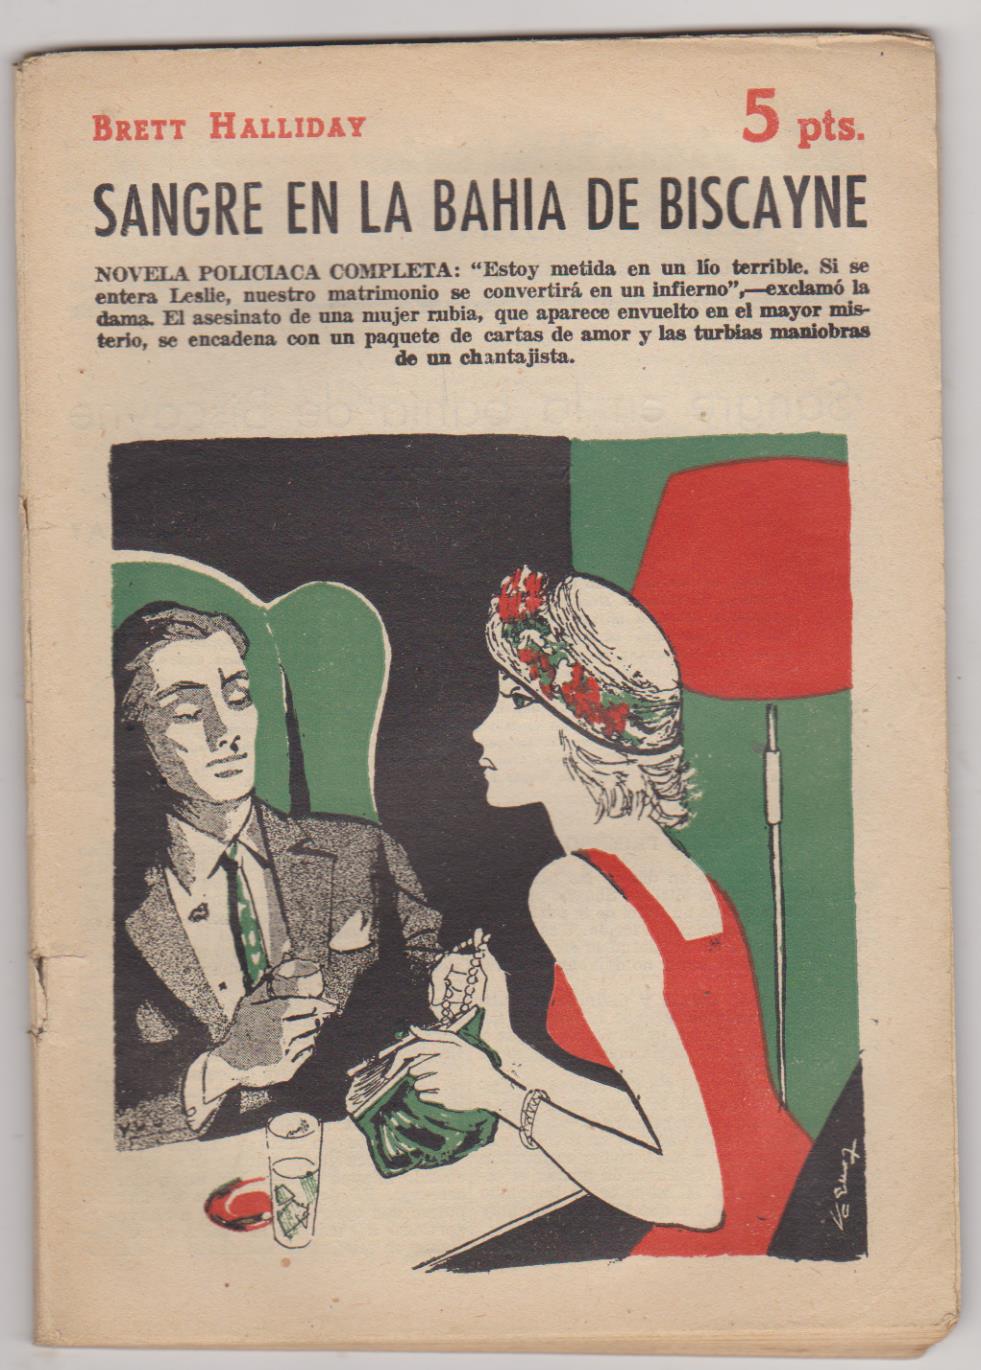 Revista Literaria nº 1433. Brett Halliday. Sangre en la Bahía de Biscayne. Año 1958